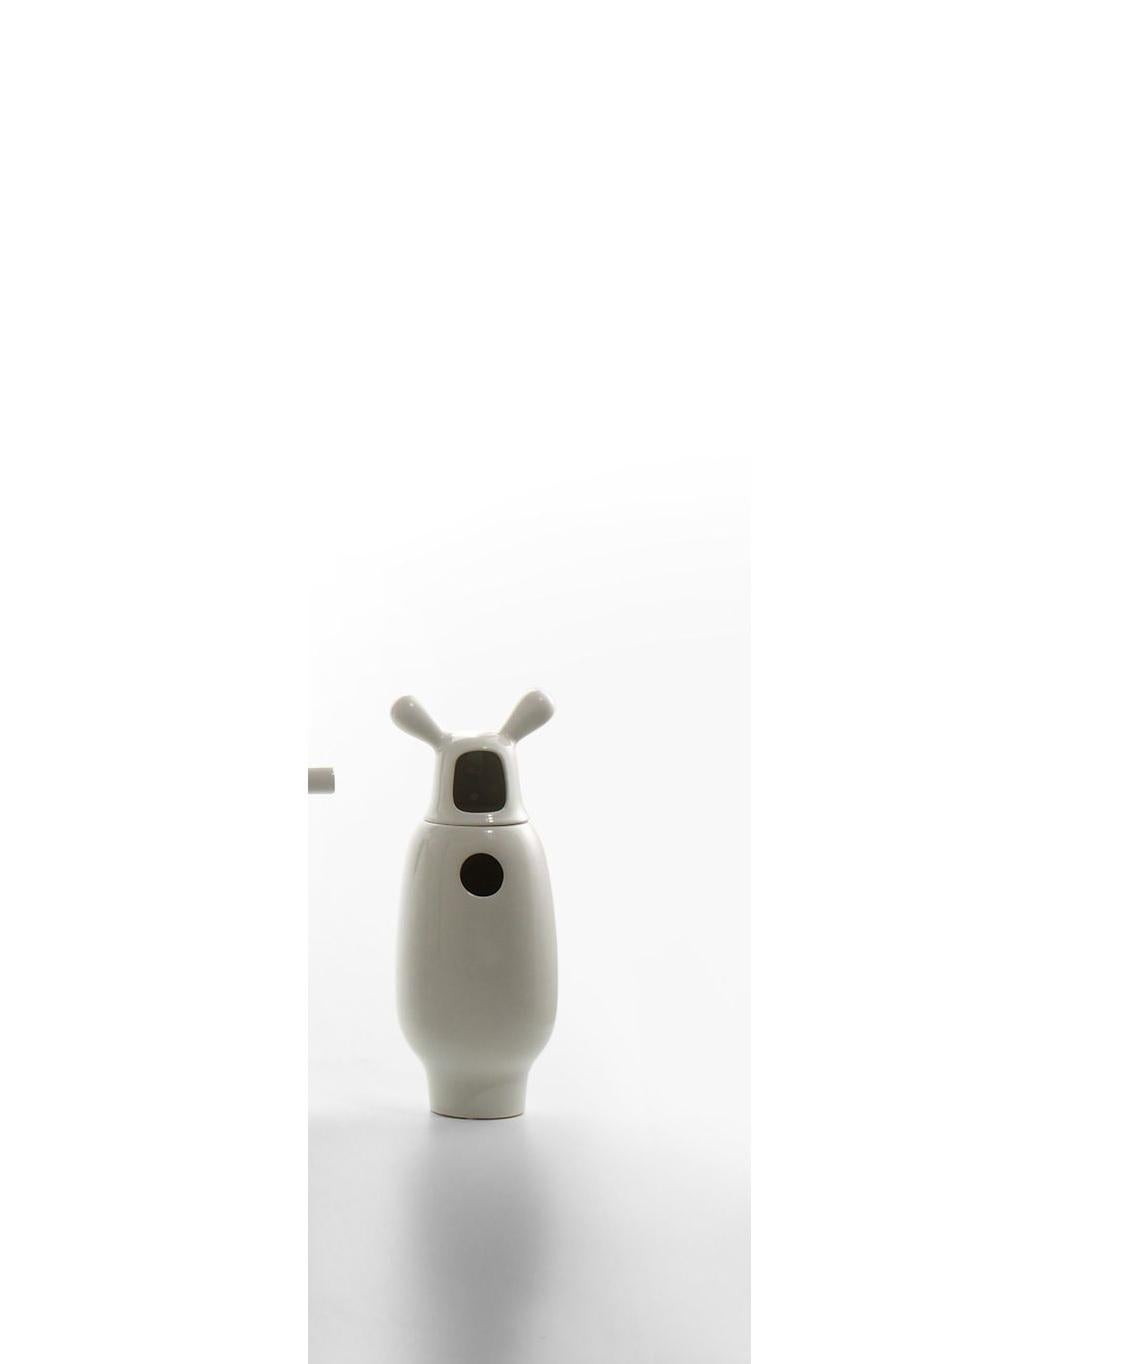 Showtime-Vase Nummer 2 von Jaime Hayon 
Abmessungen: Durchmesser 13 x Höhe 34 cm 
MATERIALIEN: Zweiteilig, aus emailliertem Feinsteinzeug, einfarbig (innen und außen weiß) oder zweifarbig (innen weiß und außen in verschiedenen Farben, je nach